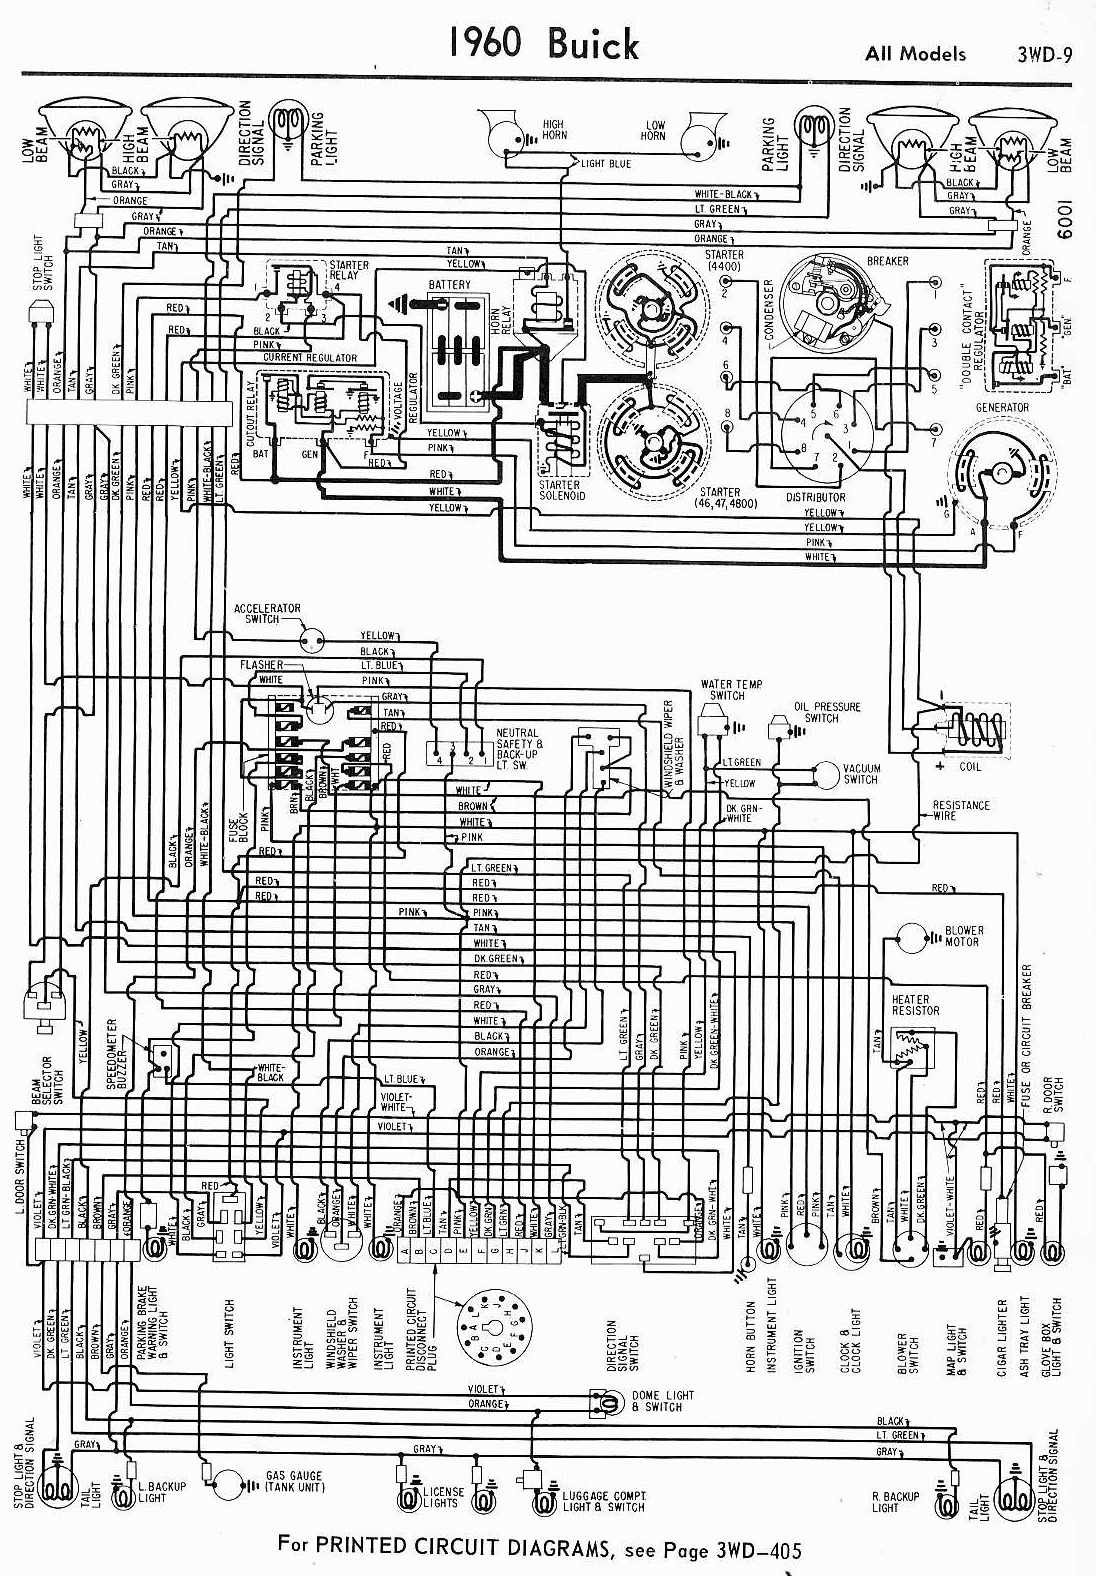 1959 century resorter wiring diagram